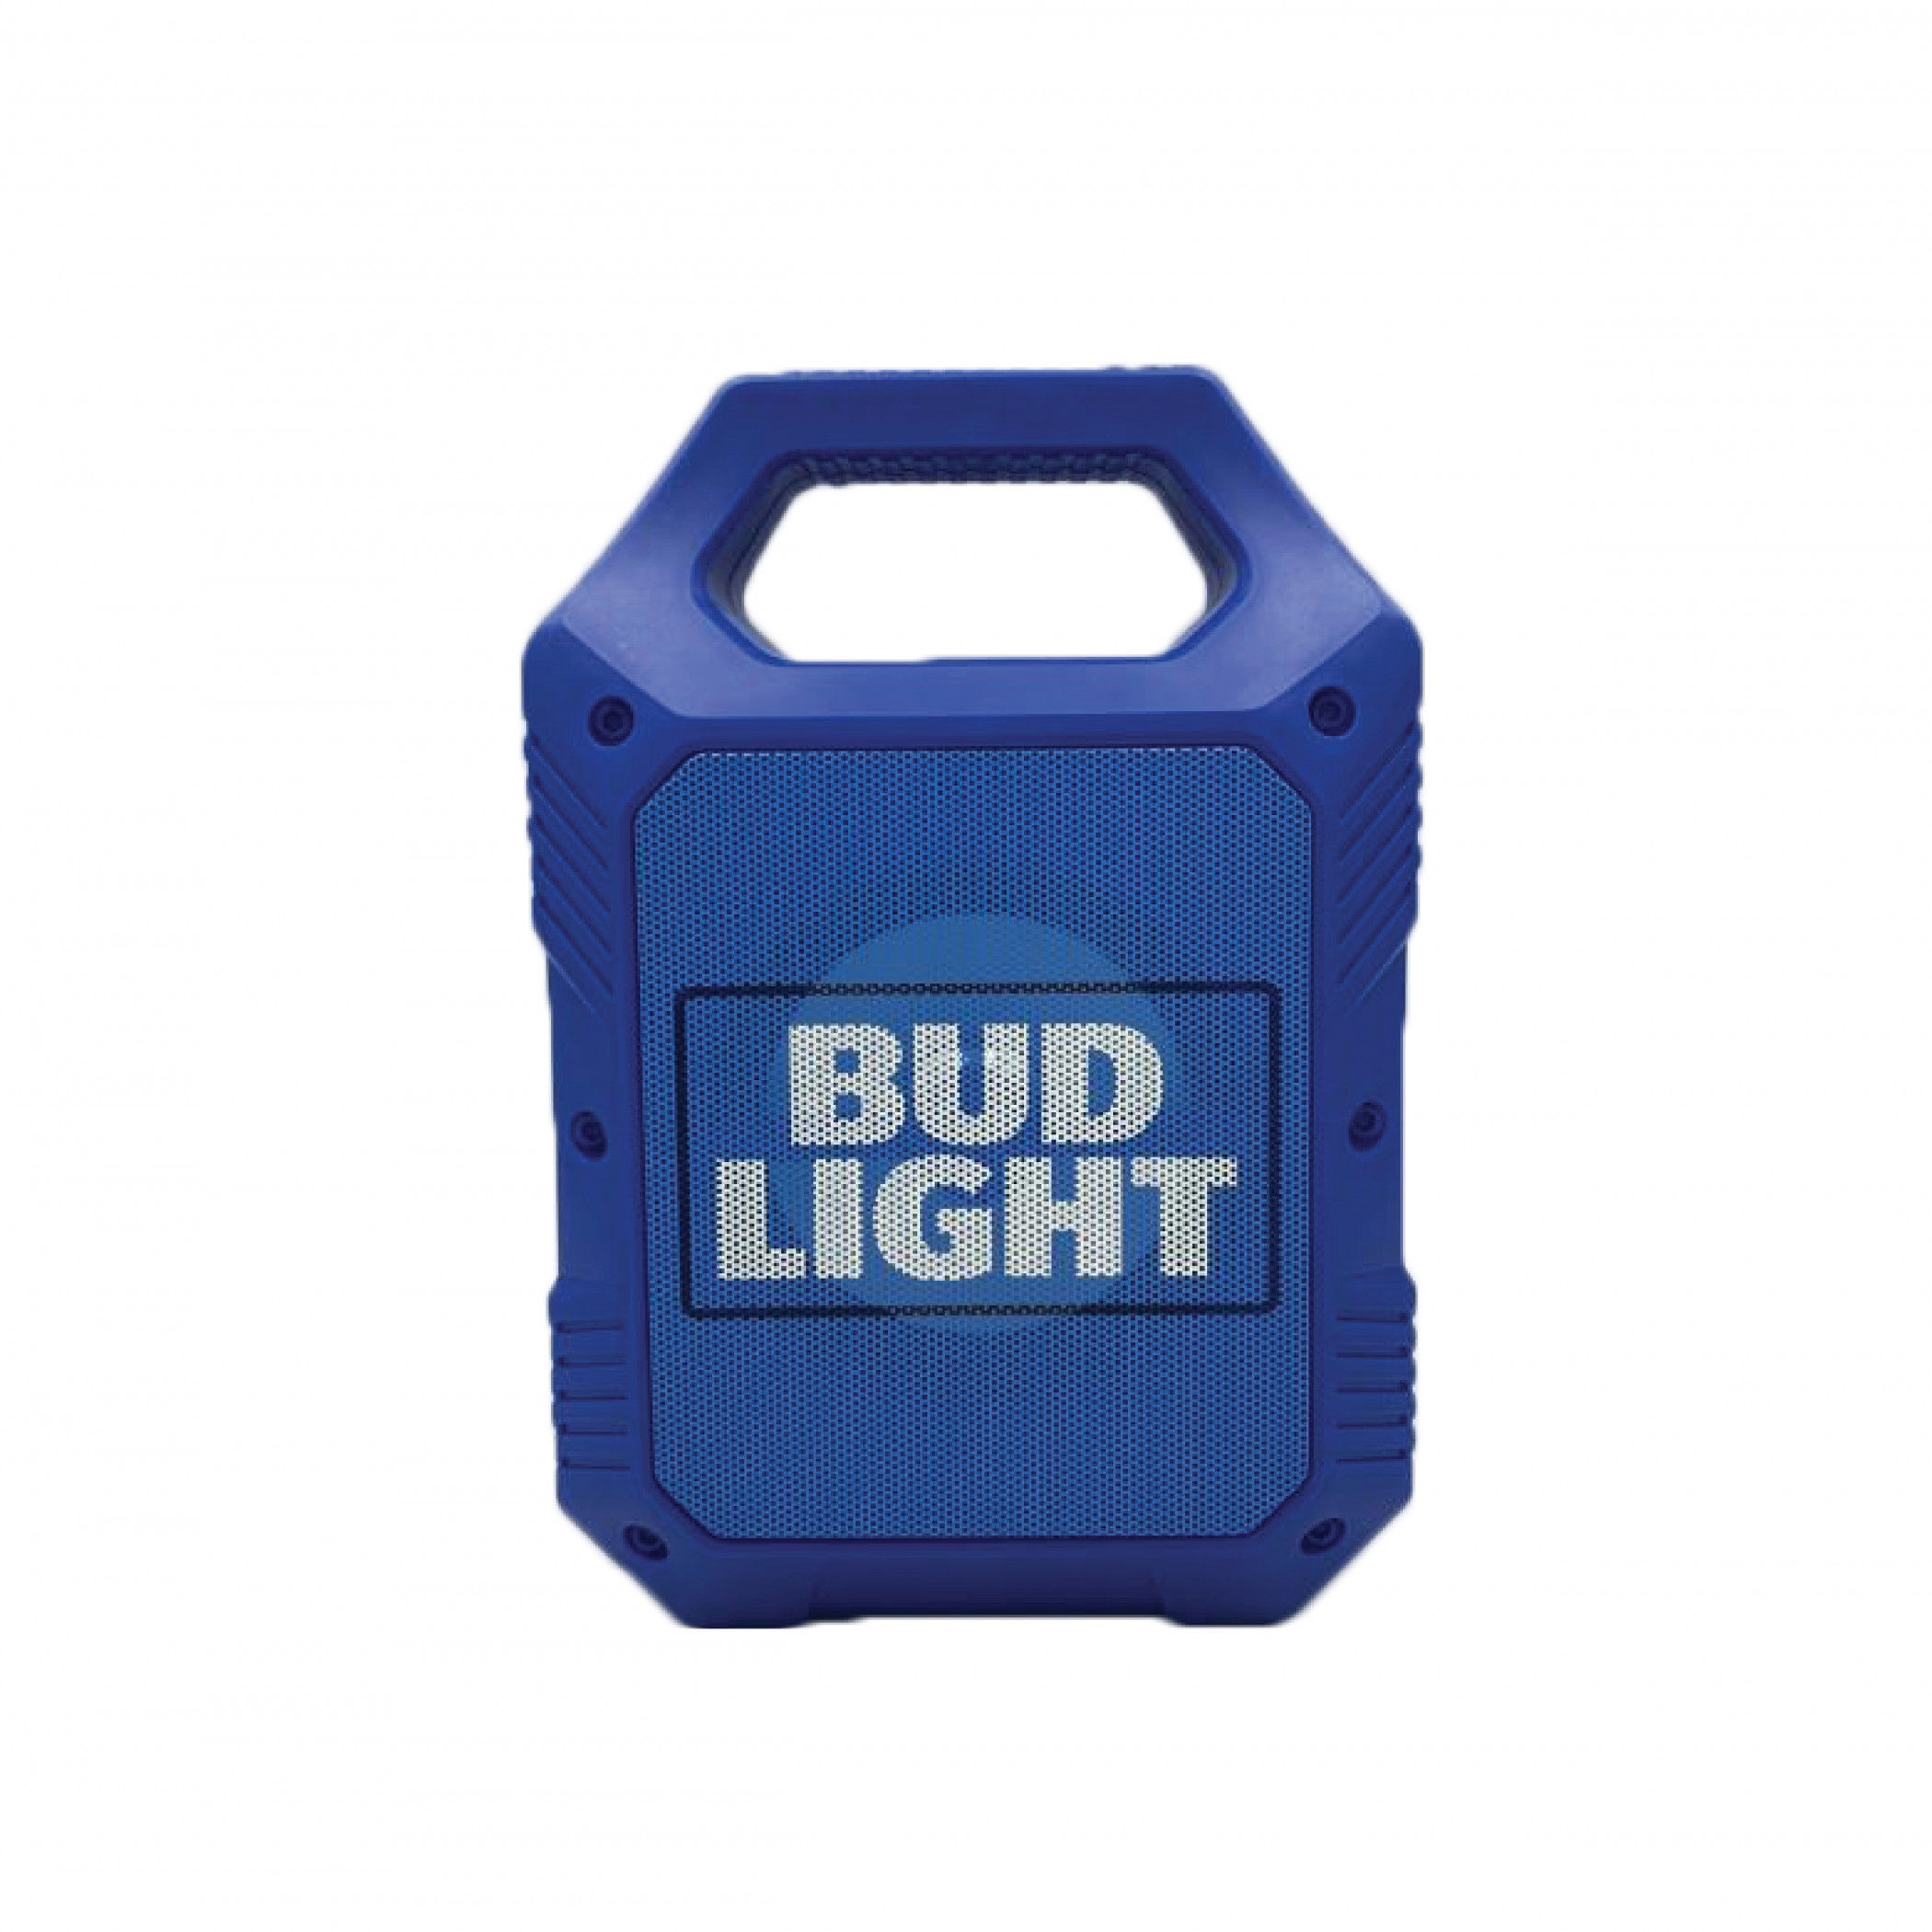 Bud Light 9' Rugged Tailgate LED Bluetooth Speaker